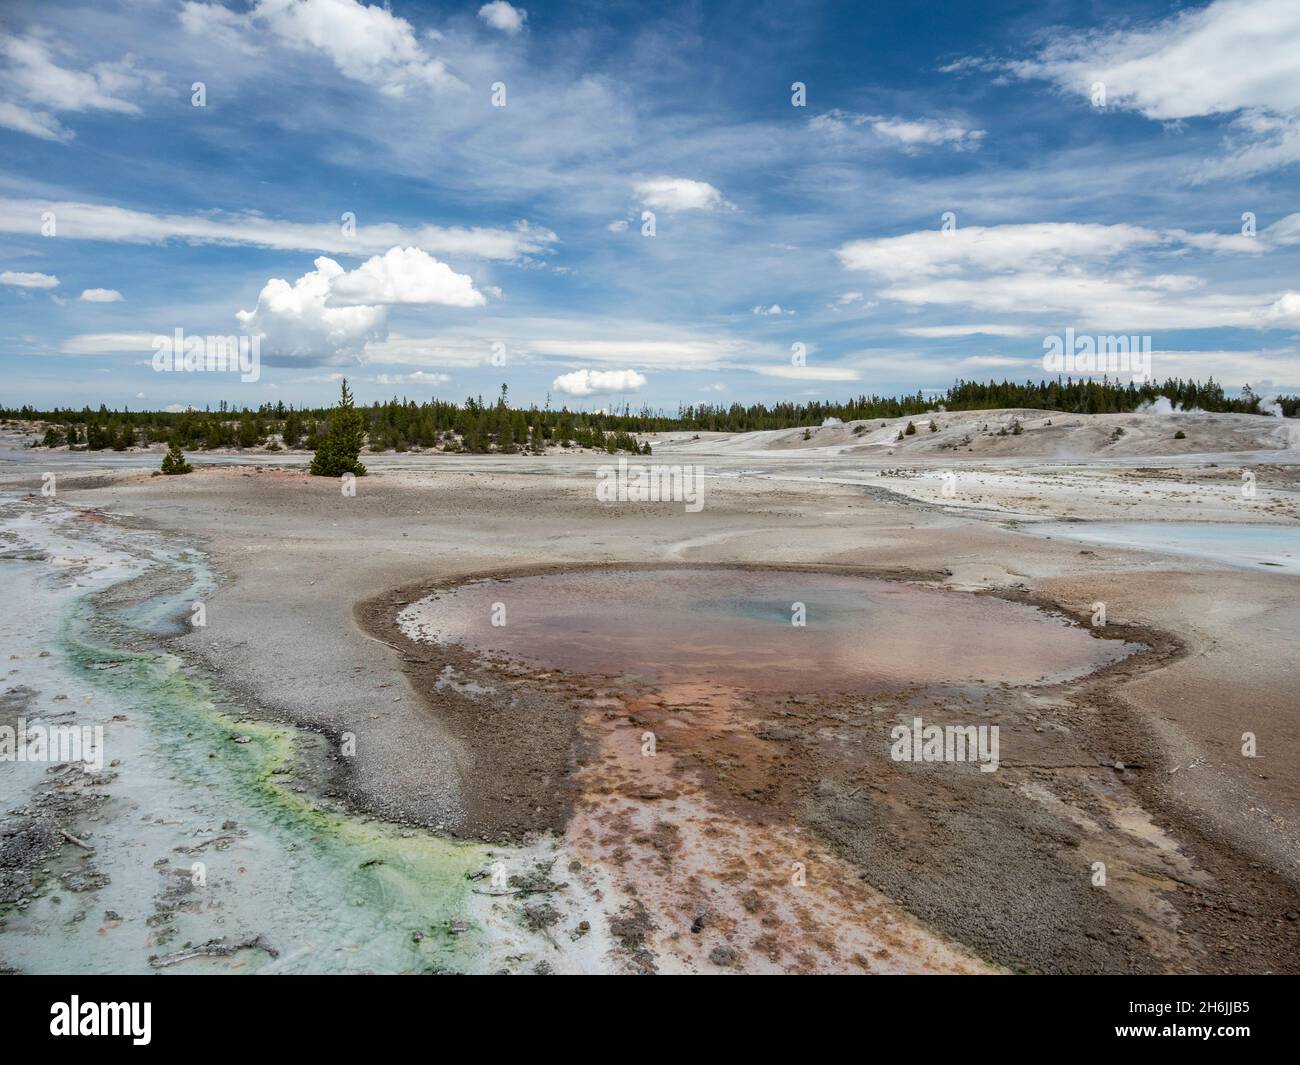 Bassin de porcelaine, dans la région du bassin de Norris Geyser, parc national de Yellowstone, site du patrimoine mondial de l'UNESCO, Wyoming, États-Unis d'Amérique Banque D'Images